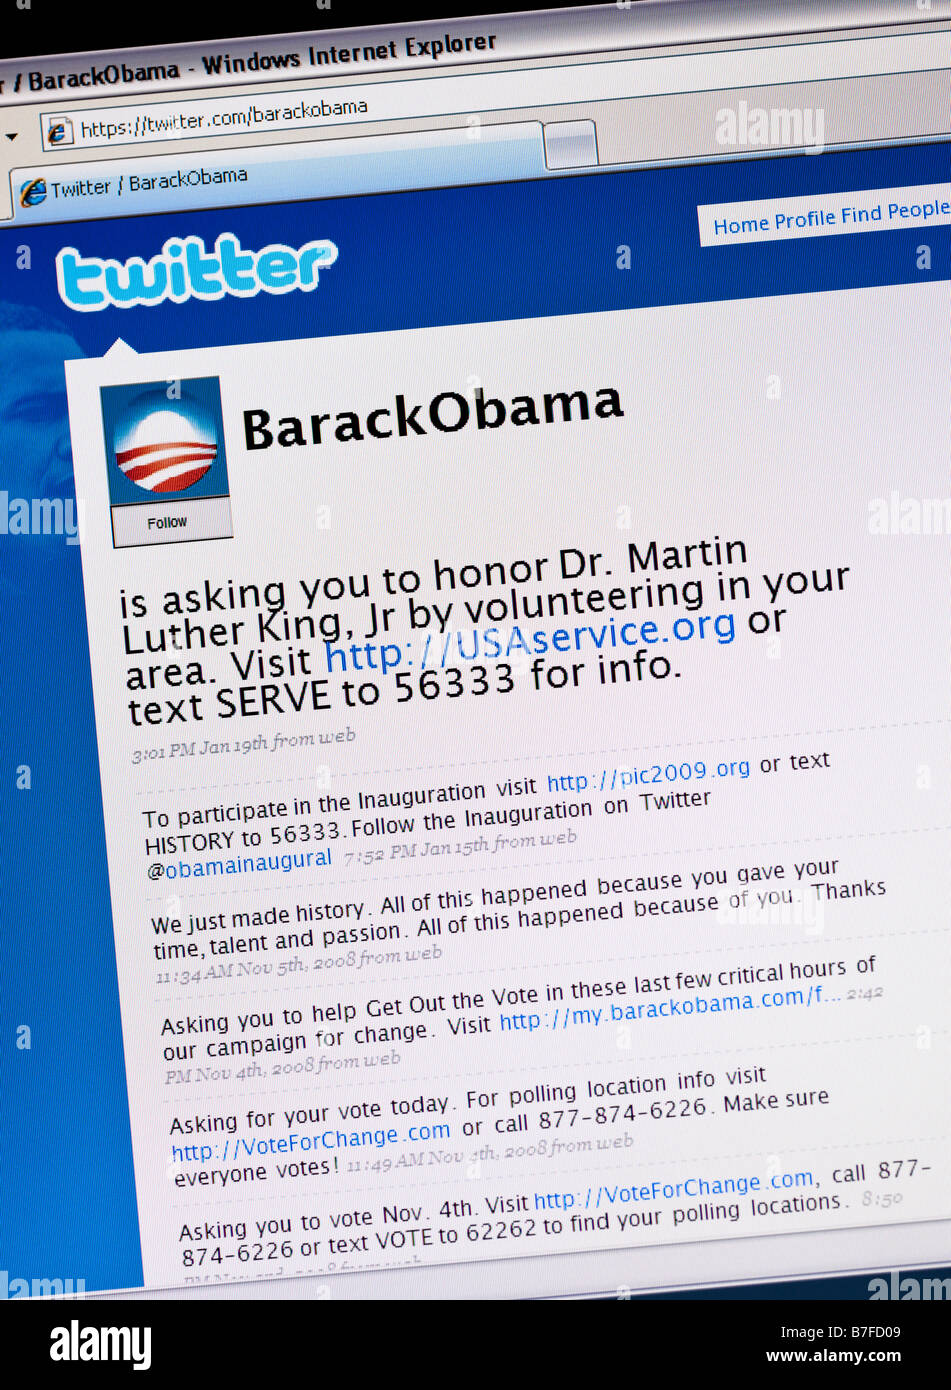 Twitter il sito di social networking Barack Obama twitter pagina che mostra "tweet" utilizzato per campagne politiche durante la sua esecuzione per il Presidente degli STATI UNITI D'AMERICA Foto Stock